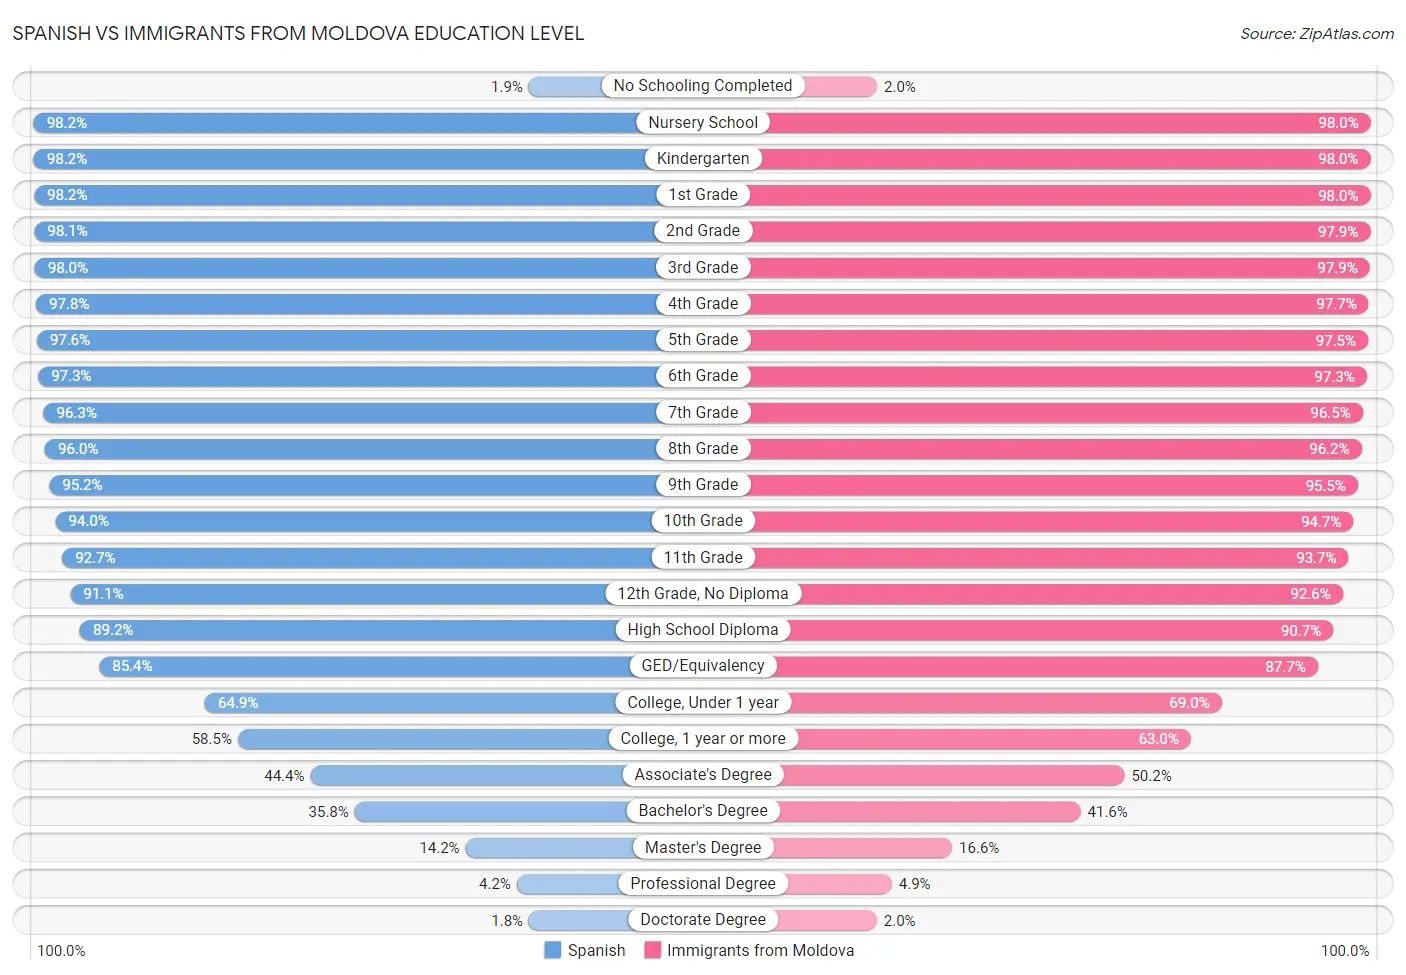 Spanish vs Immigrants from Moldova Education Level